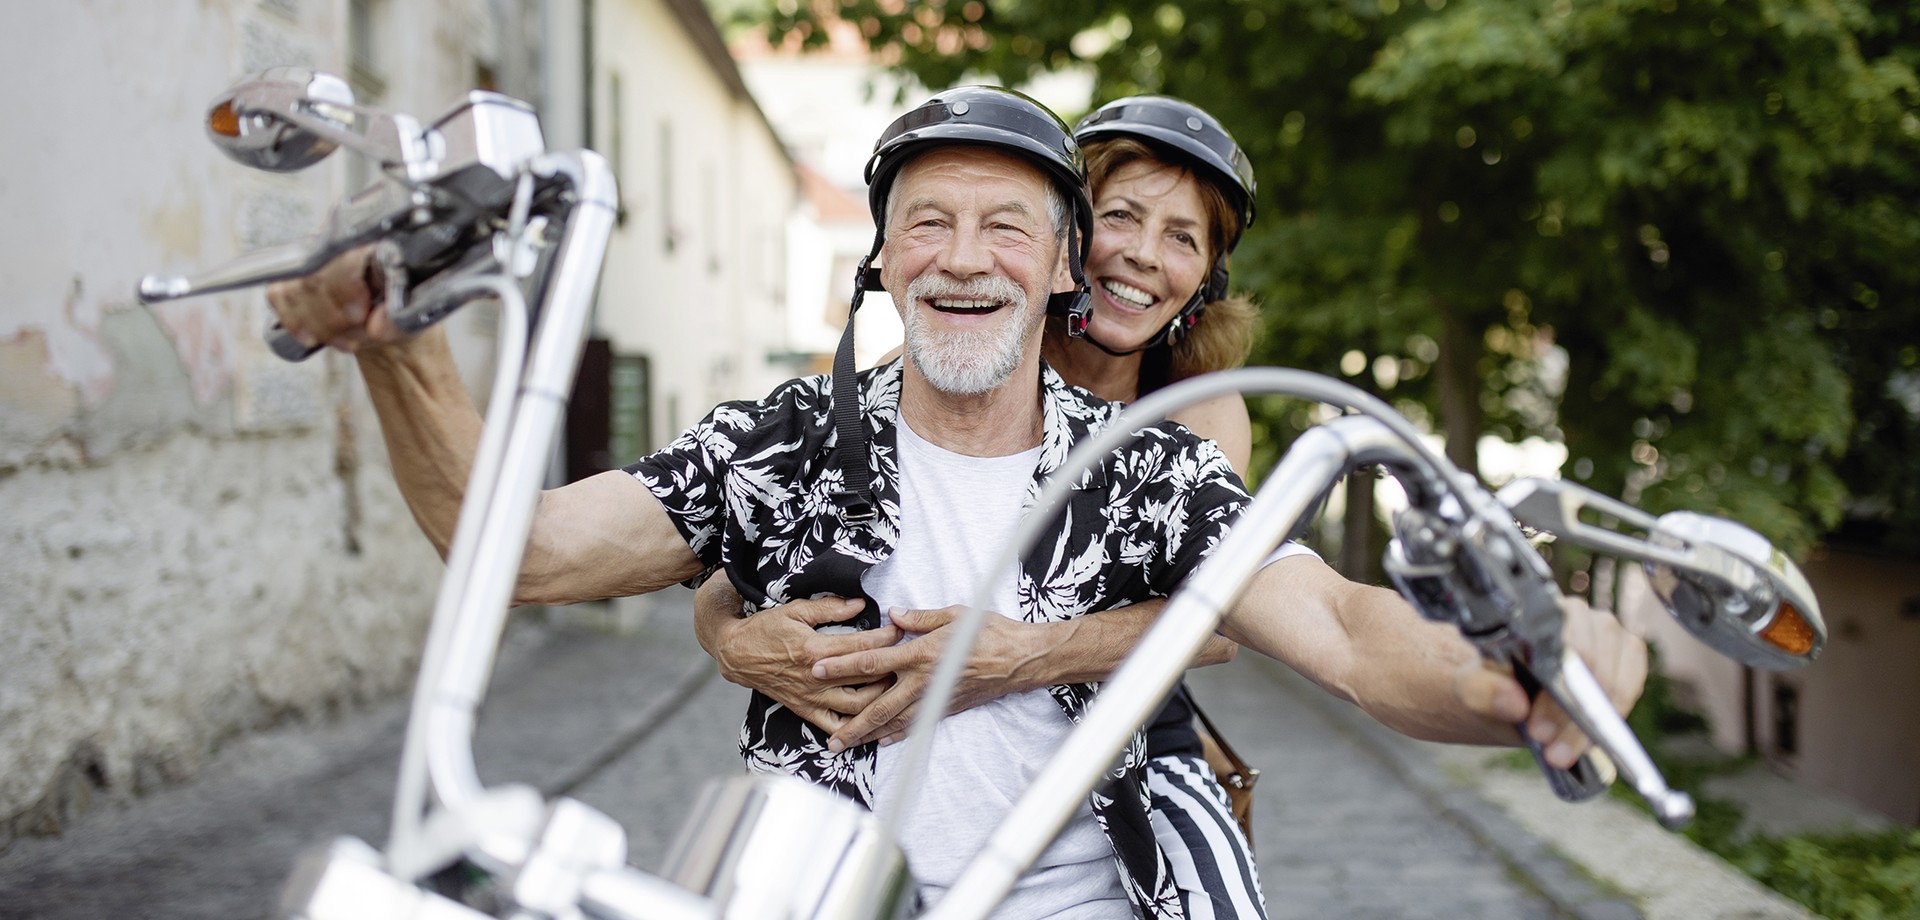 Mann und Frau auf einem Motorrad. Lachen.